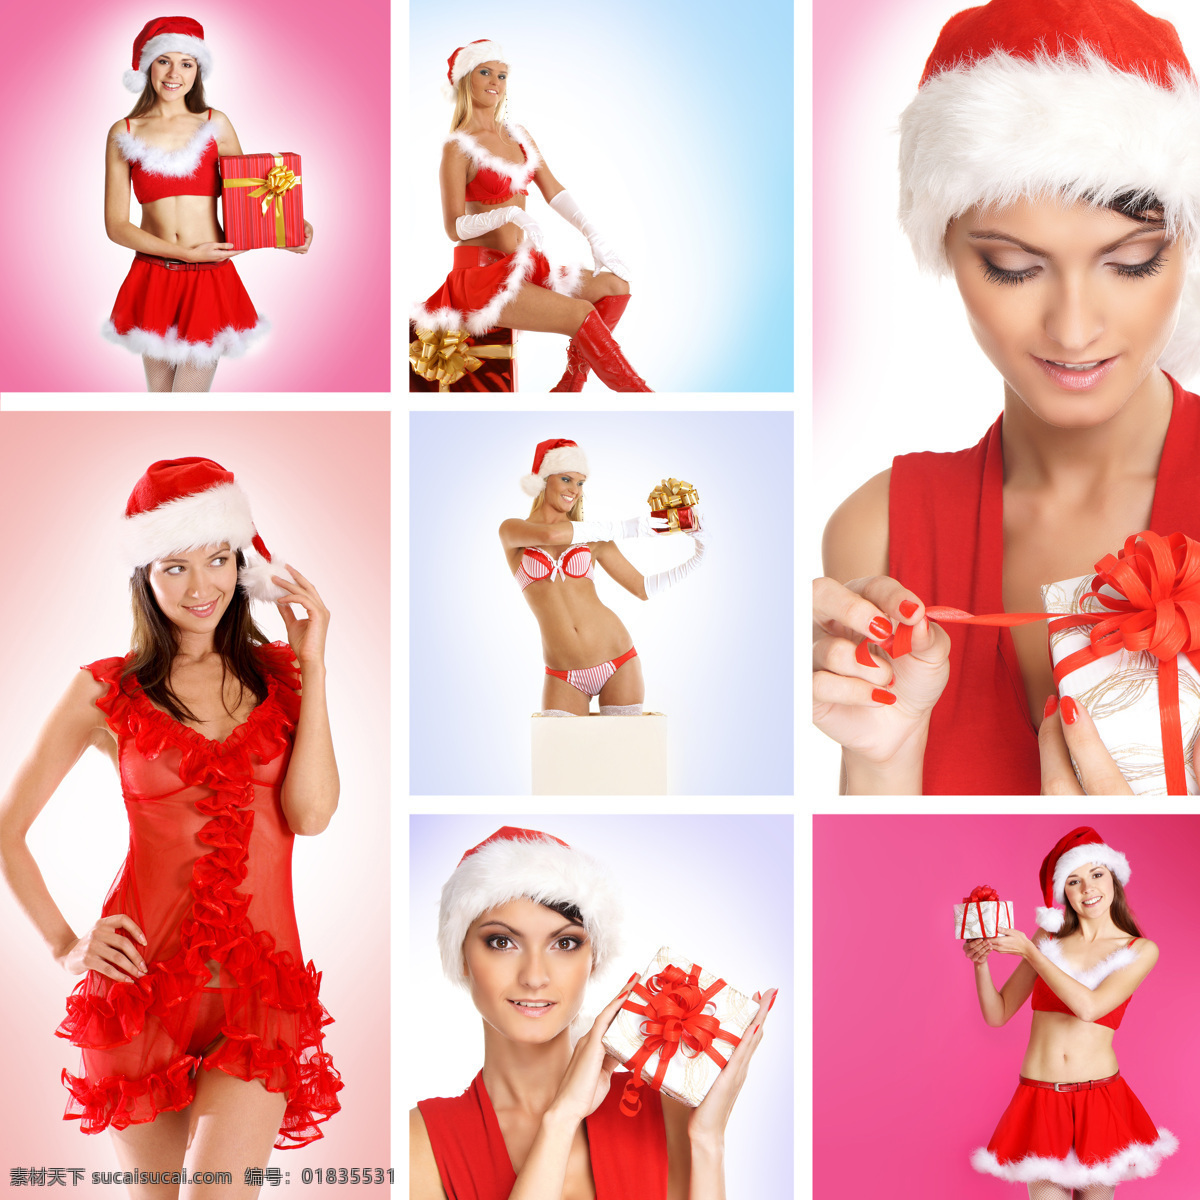 性感 圣诞节 美女图片 圣诞节美女 圣诞礼物 礼包 性感美女 美女模特 美女写真 外国女性 欧美女人 时尚女性 人物图片